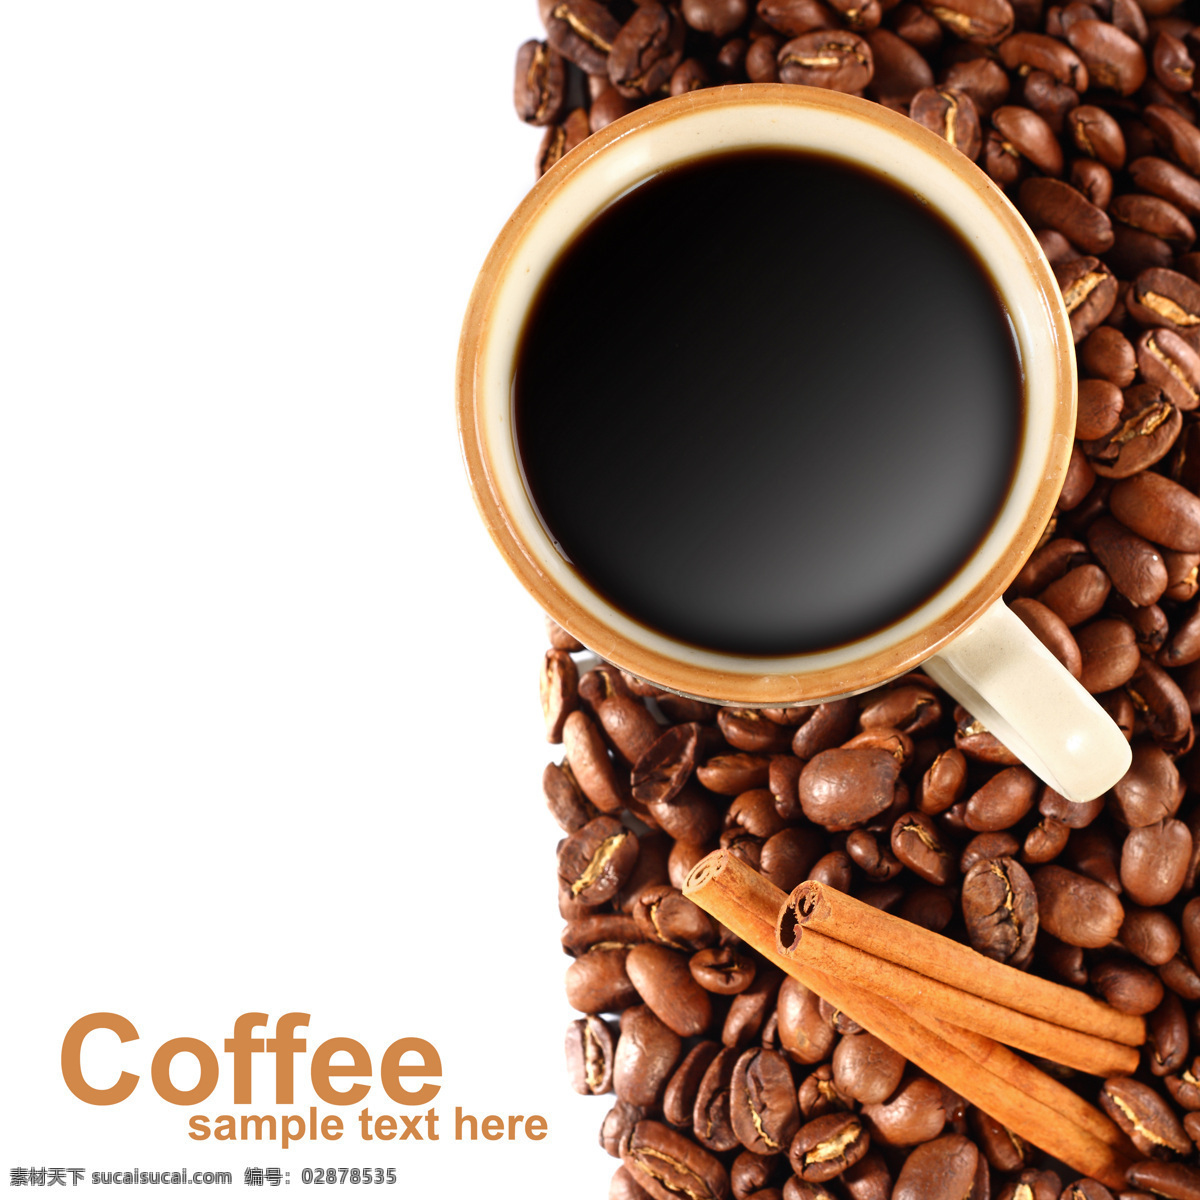 香 浓 咖啡 香浓咖啡 咖啡豆 咖啡杯 高雅 文化 饮料 饮品 饮料酒水 餐饮美食 咖啡图片